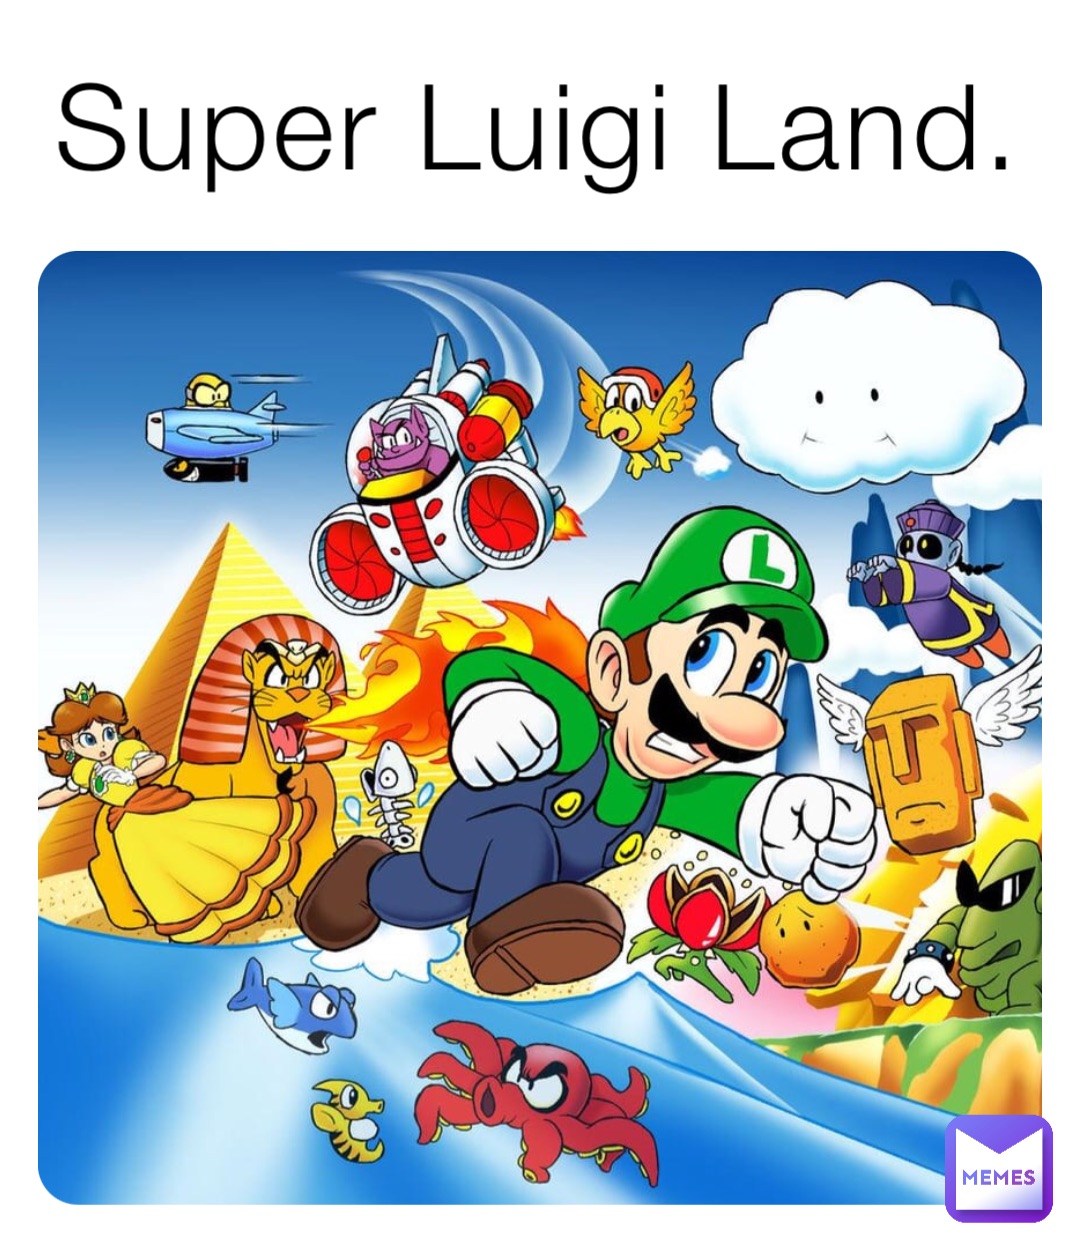 Super Luigi Land.